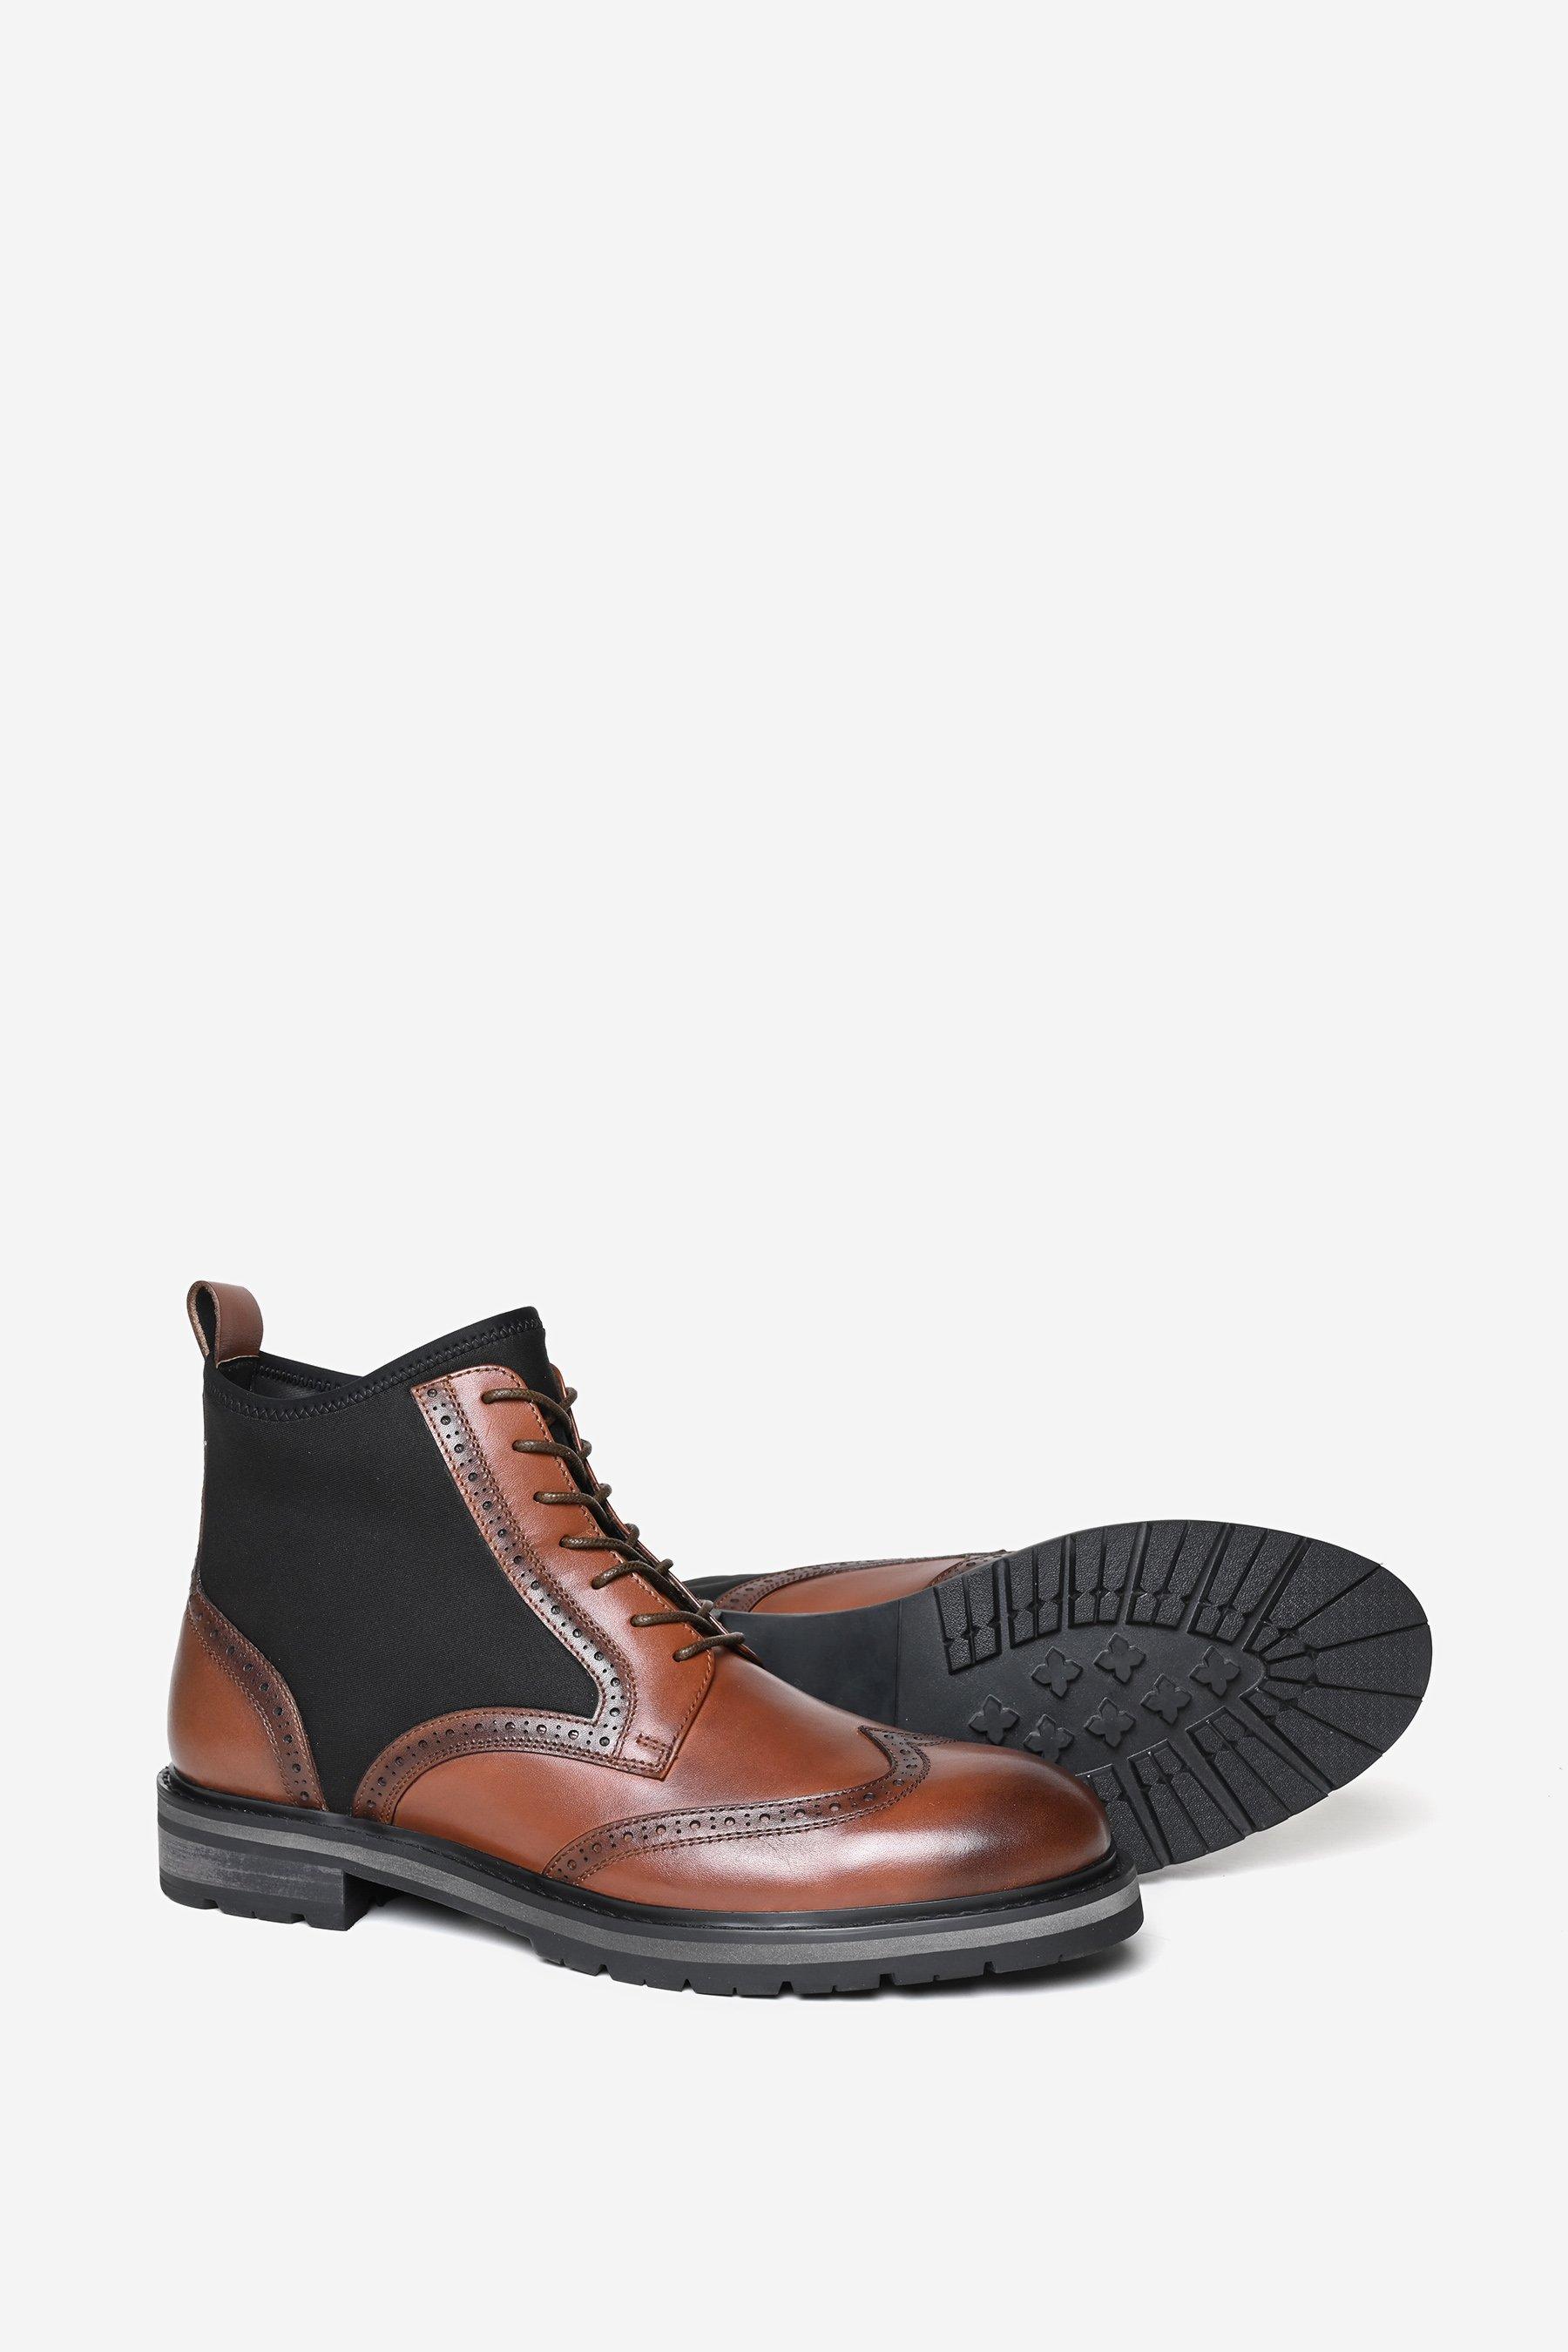 цена Кожаные ботинки дерби премиум-класса Aldgate Alexander Pace, коричневый